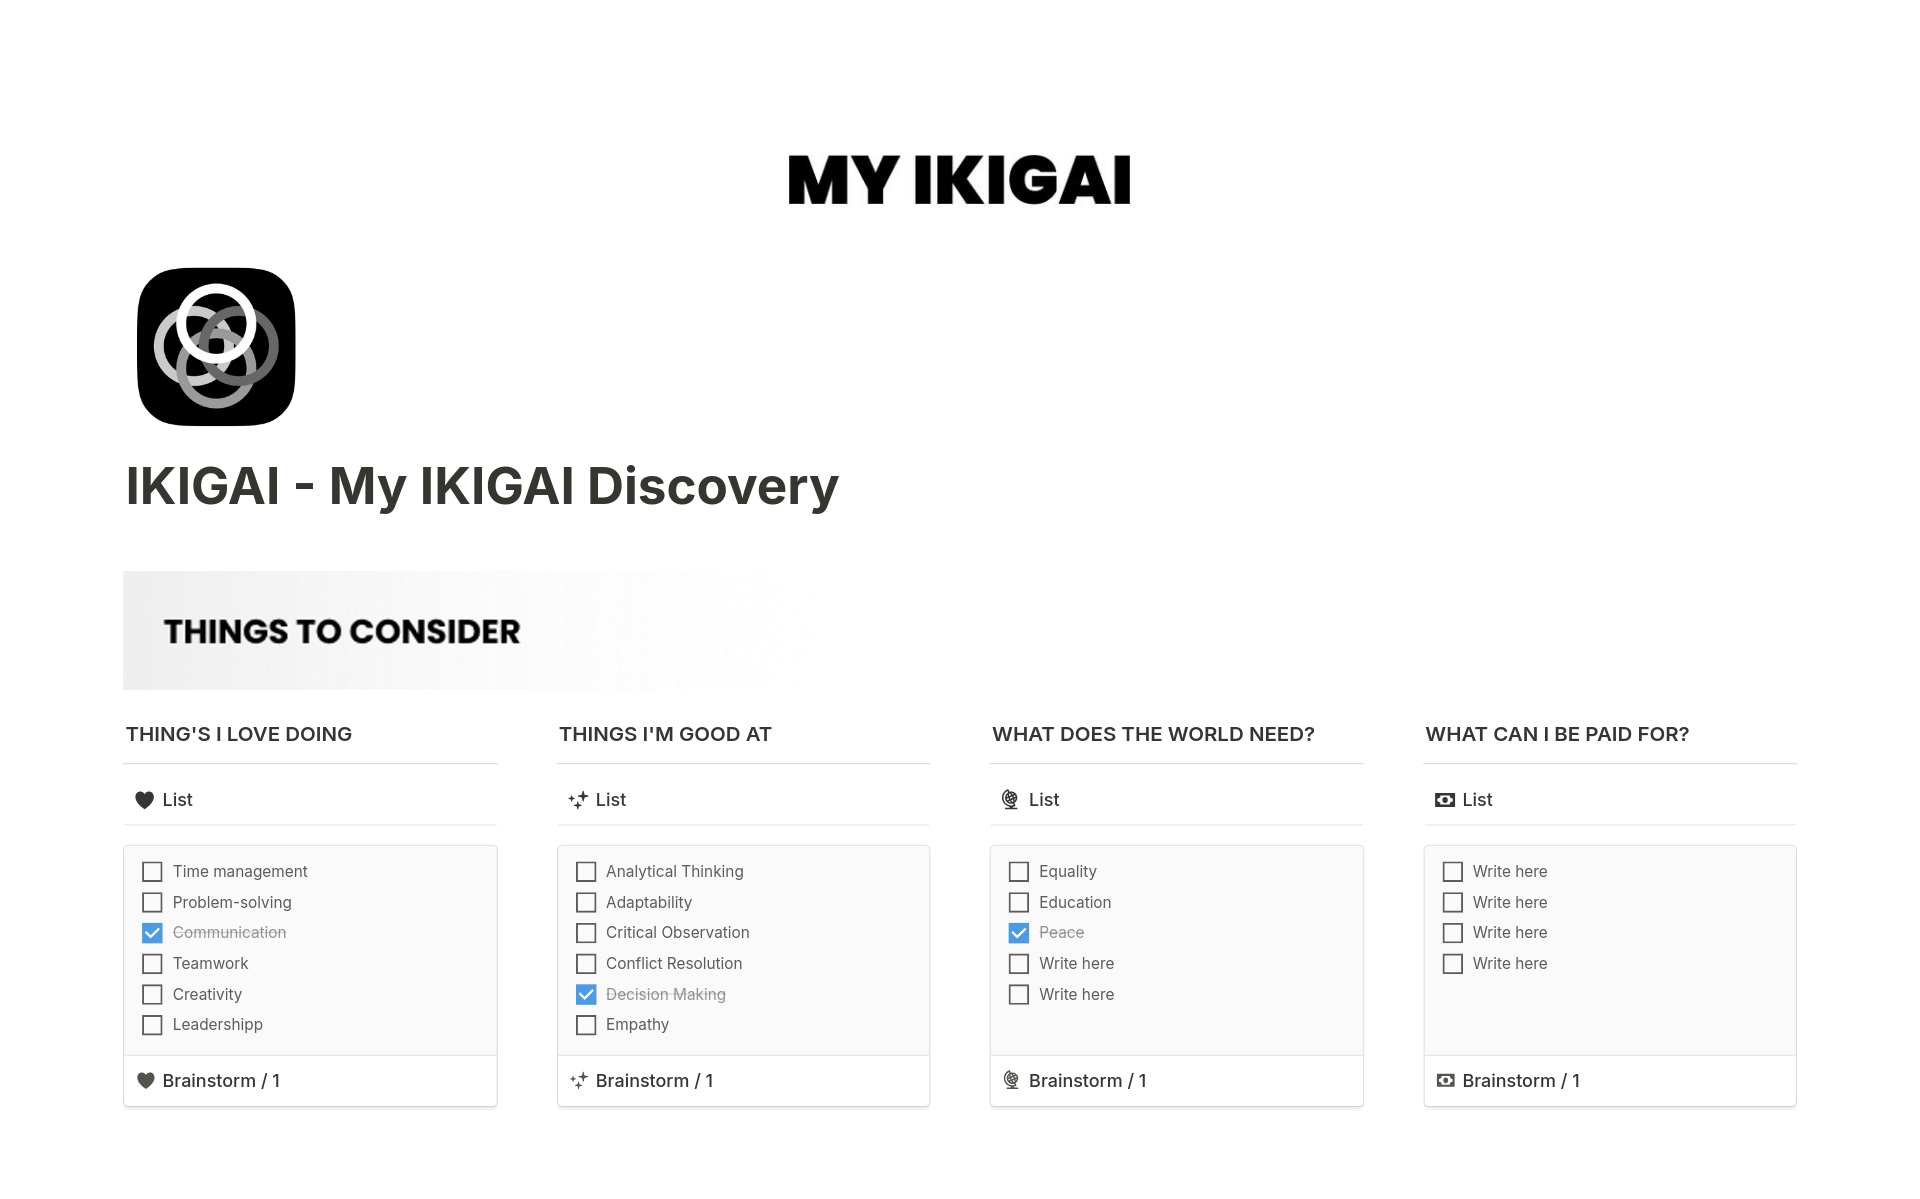 Uma prévia do modelo para IKIGAI - My IKIGAI Discovery